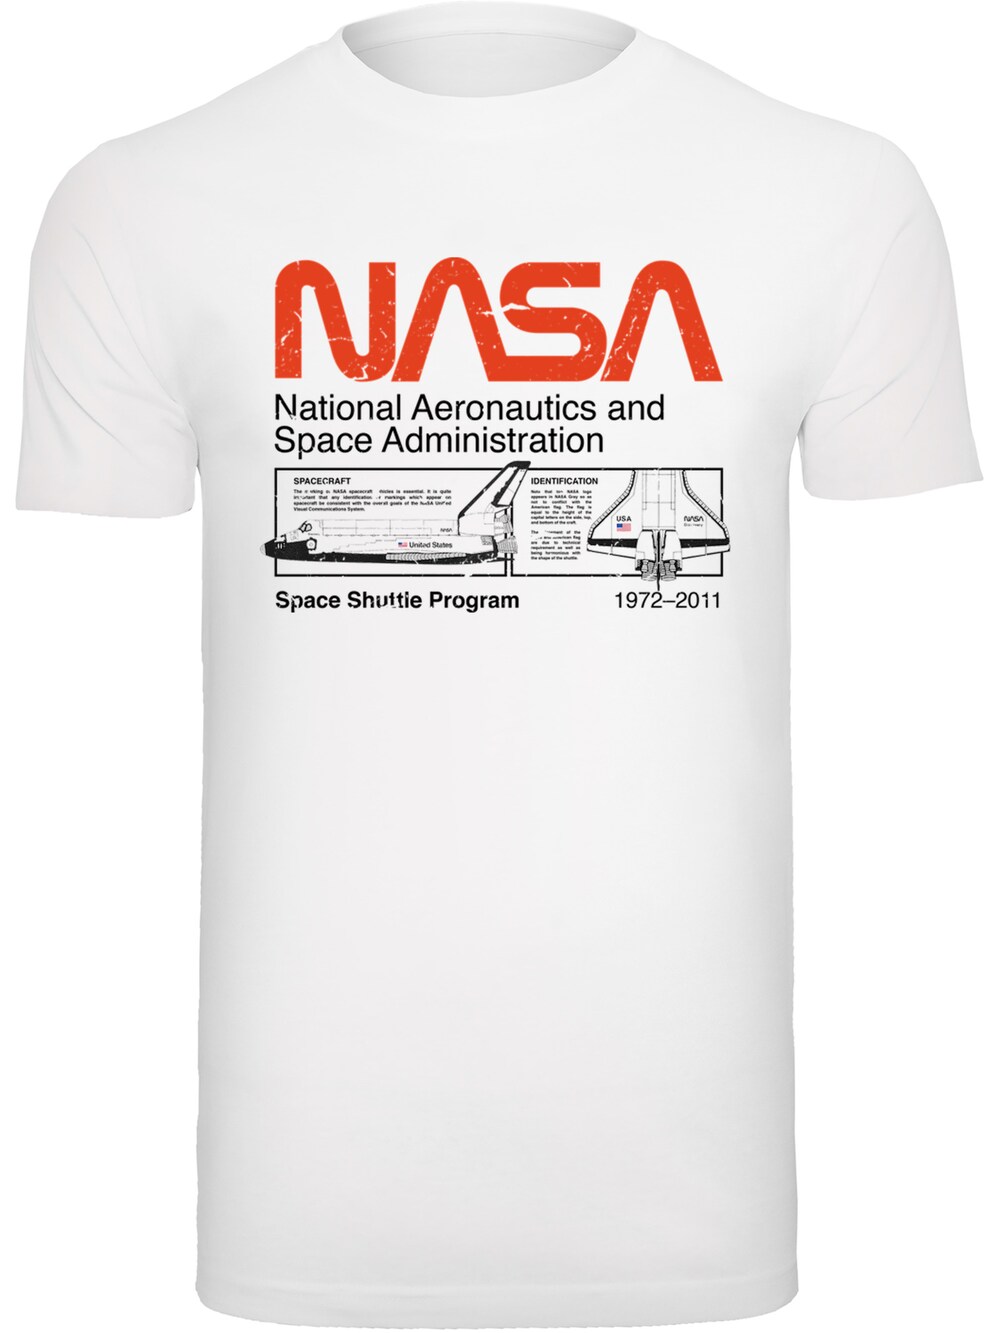 Футболка F4Nt4Stic NASA Classic Space Shuttle, белый